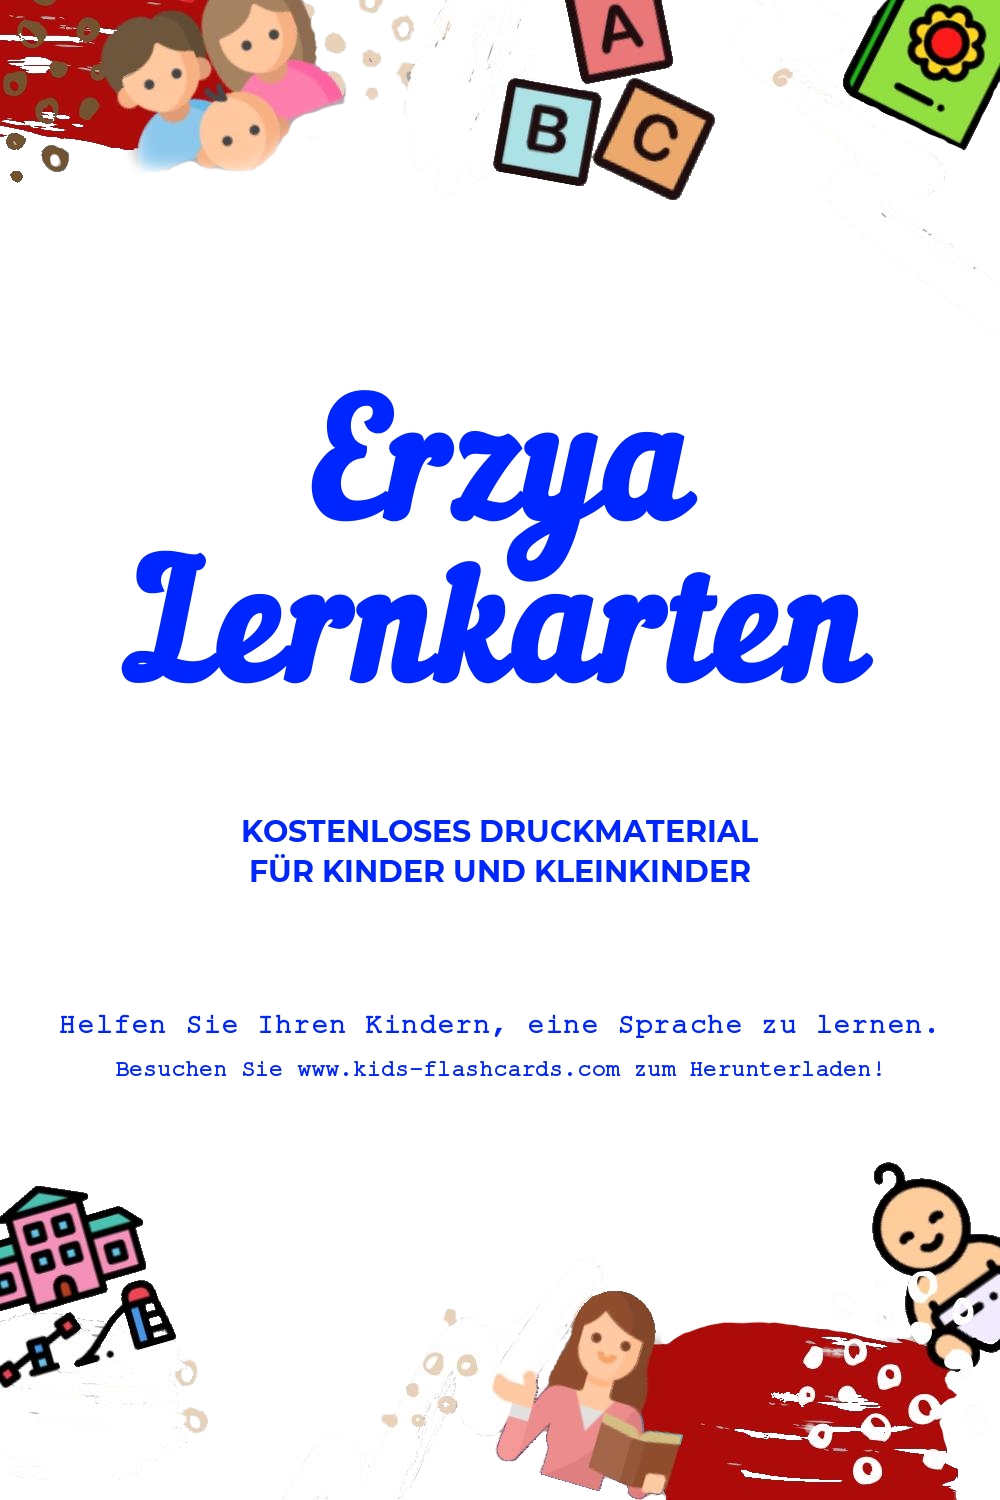 Arbeitsblätter zum Erlernen der Erzyaen Sprache